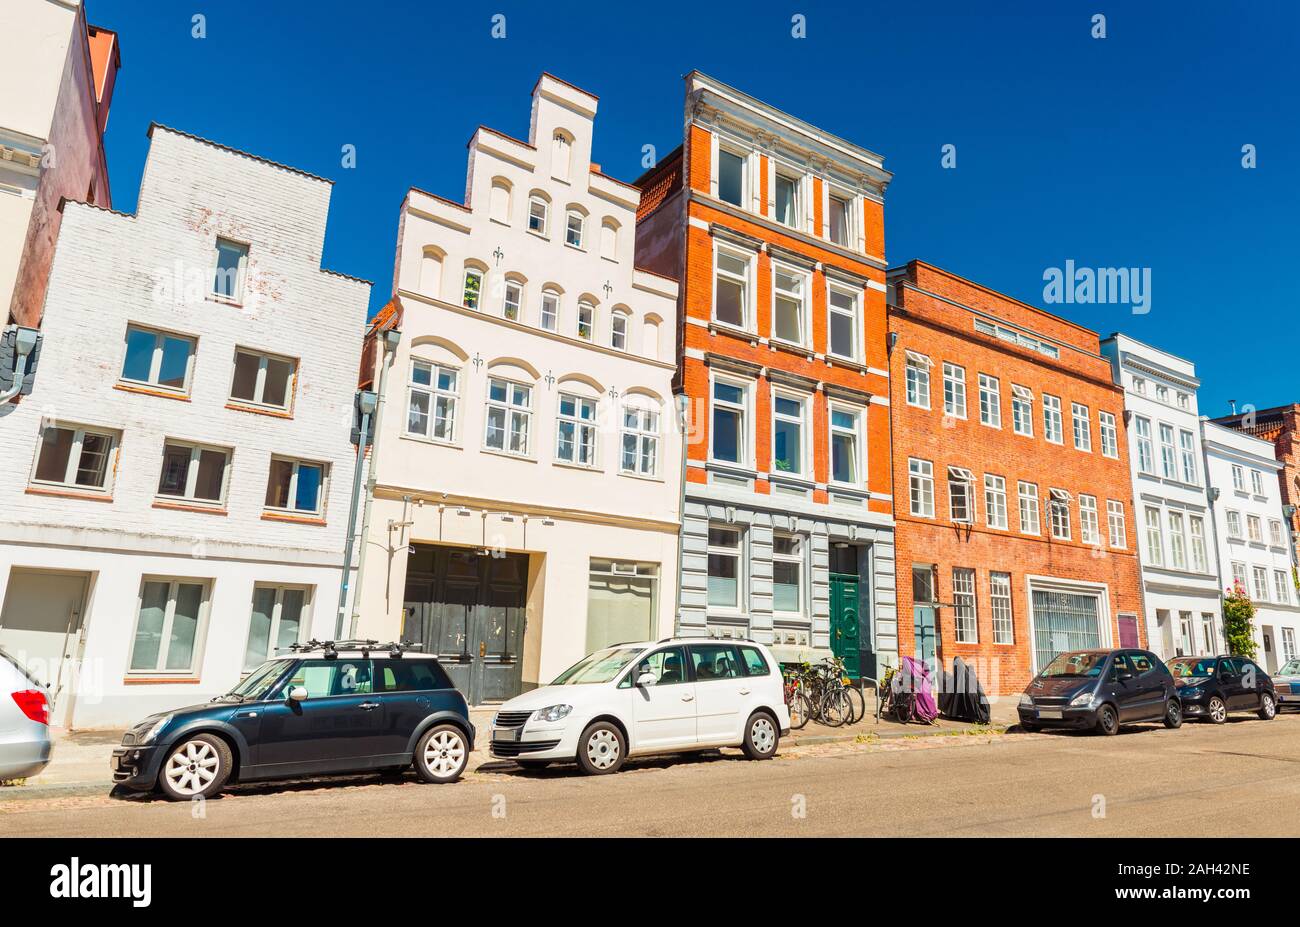 Une rue d'une vieille ville allemande. Les voitures modernes stationné près d'une rangée de différents bâtiments historiques. Lübeck, Allemagne Banque D'Images